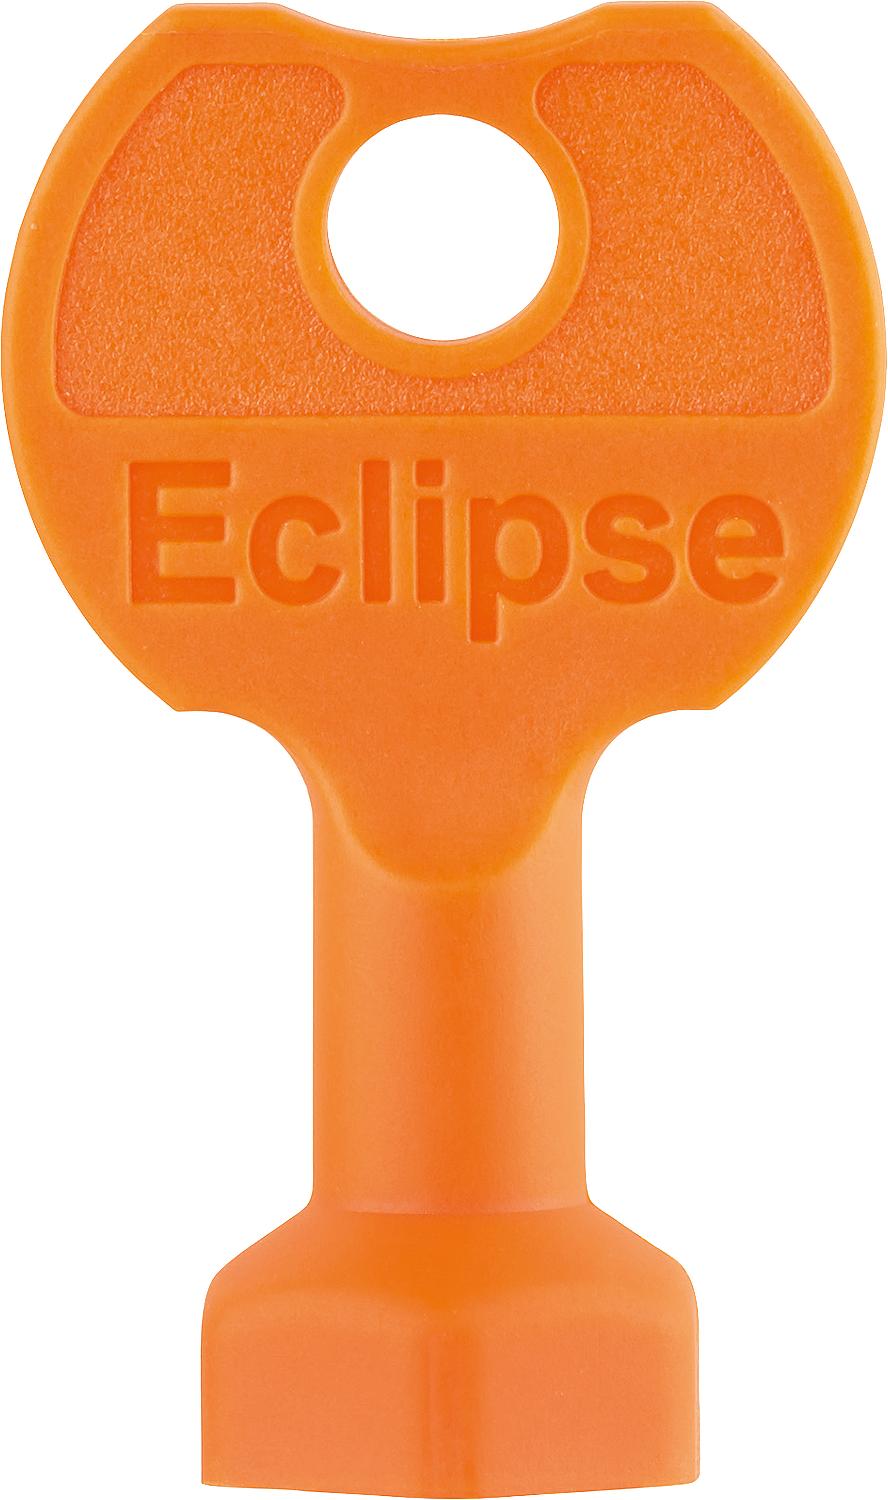 asdec life ® Einstellschlüssel Heimeier für serie Eclipse